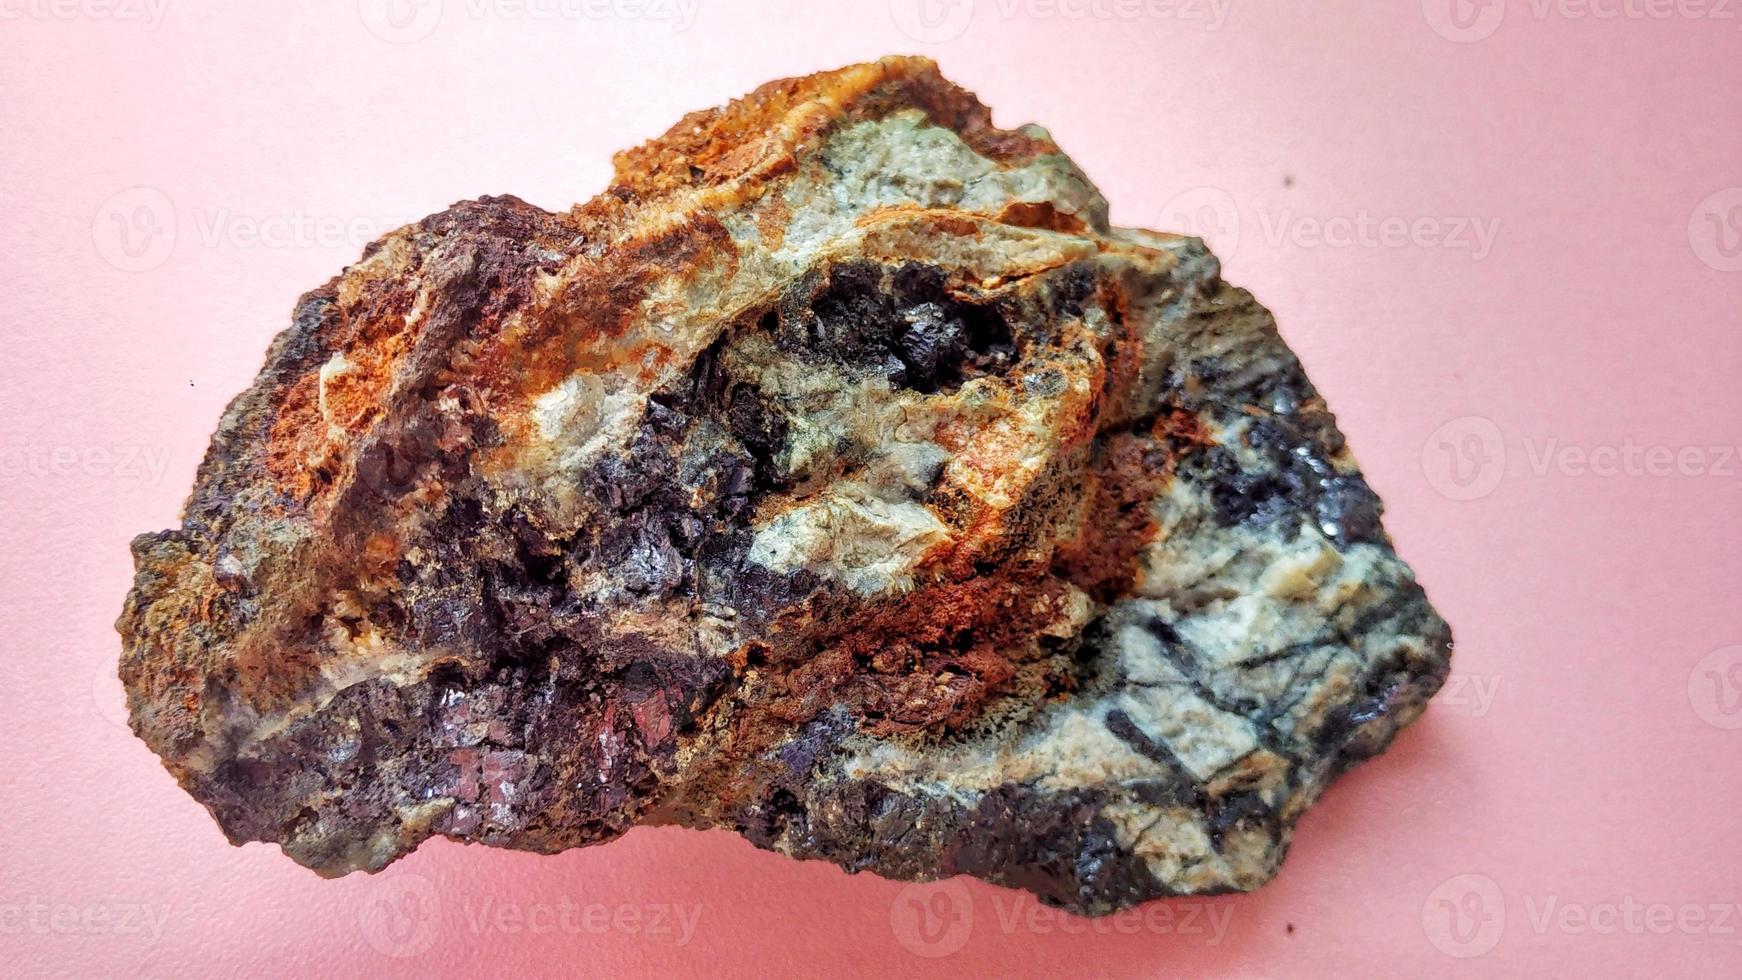 eruptiver Andesit, der in einer hydrothermalen Alterationszone alteriert ist, mit Erzgangquarz, Chlorit und glänzenden schwarzen Pyritmineralien auf einem rosa Hintergrund. Indonesien, geologische Erkundung. foto